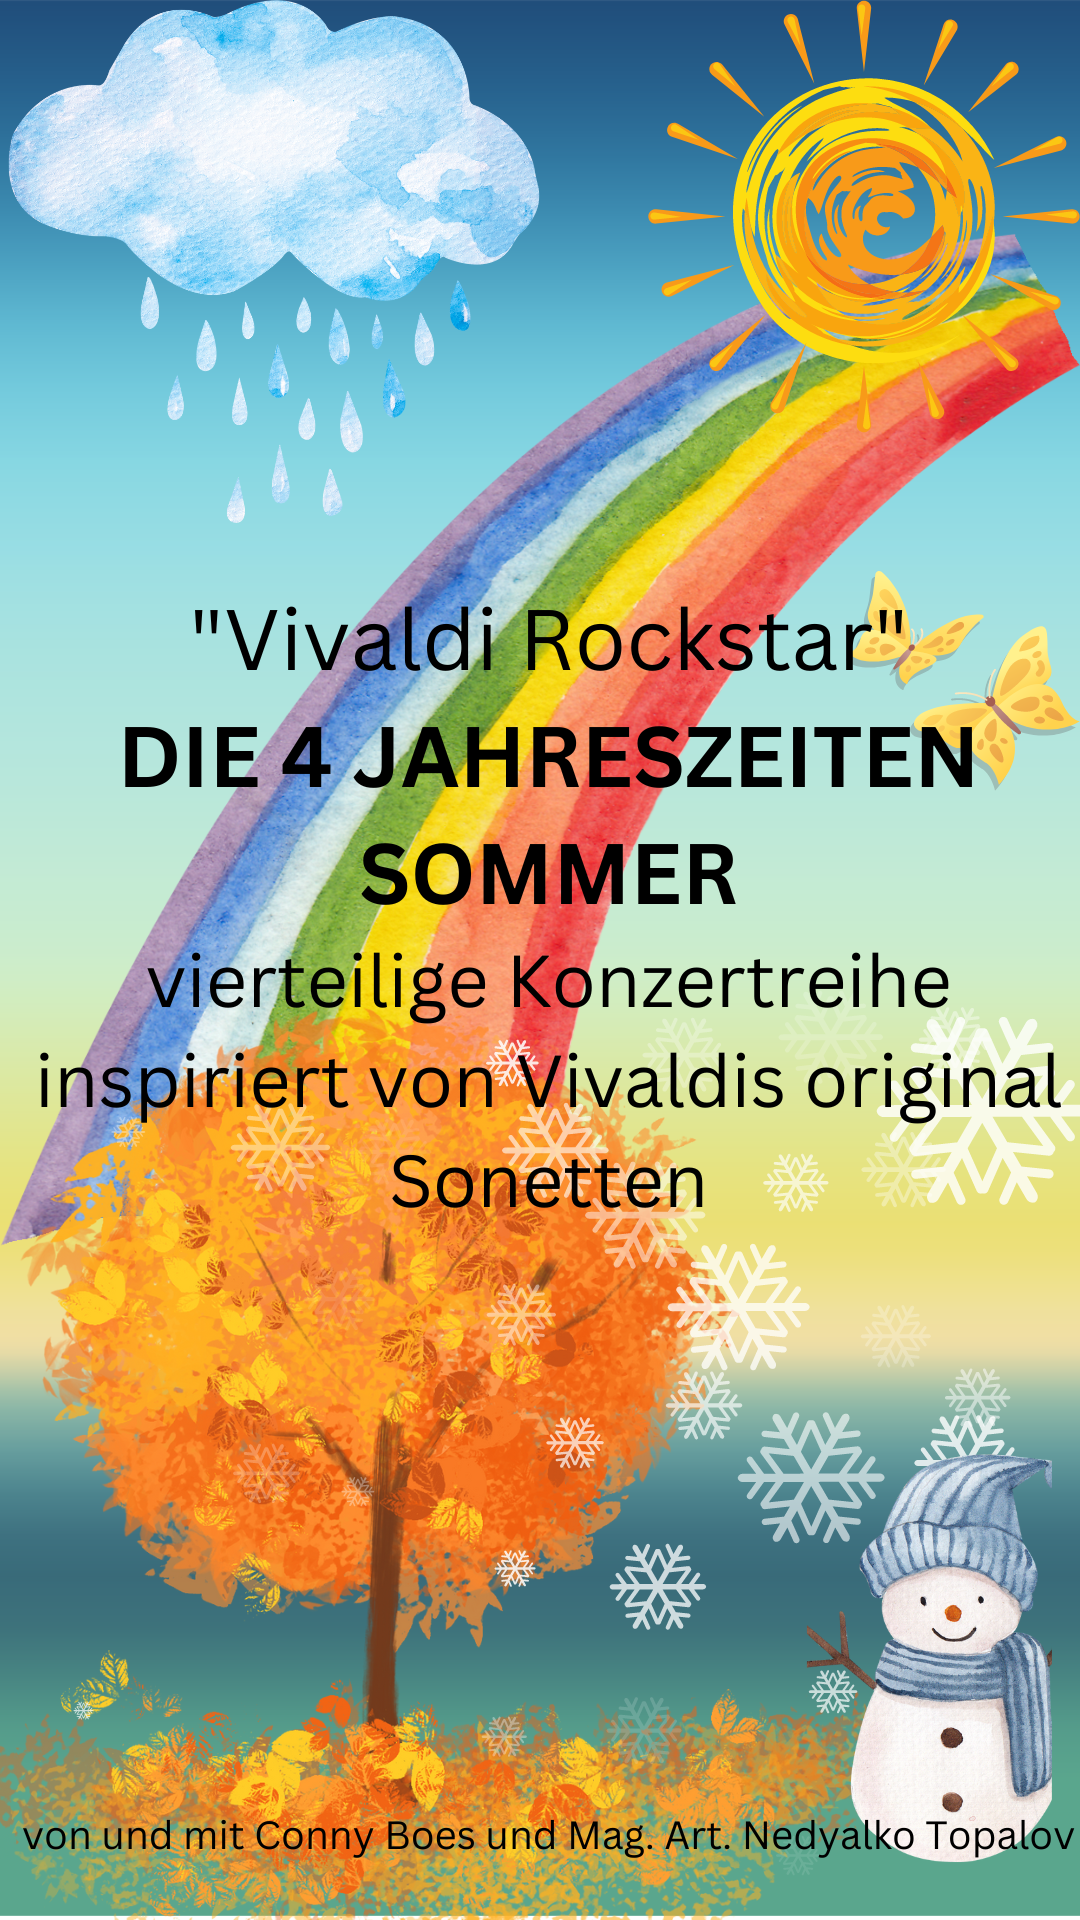 Vivaldi Rockstar "Die vier Jahreszeiten" - Sommer